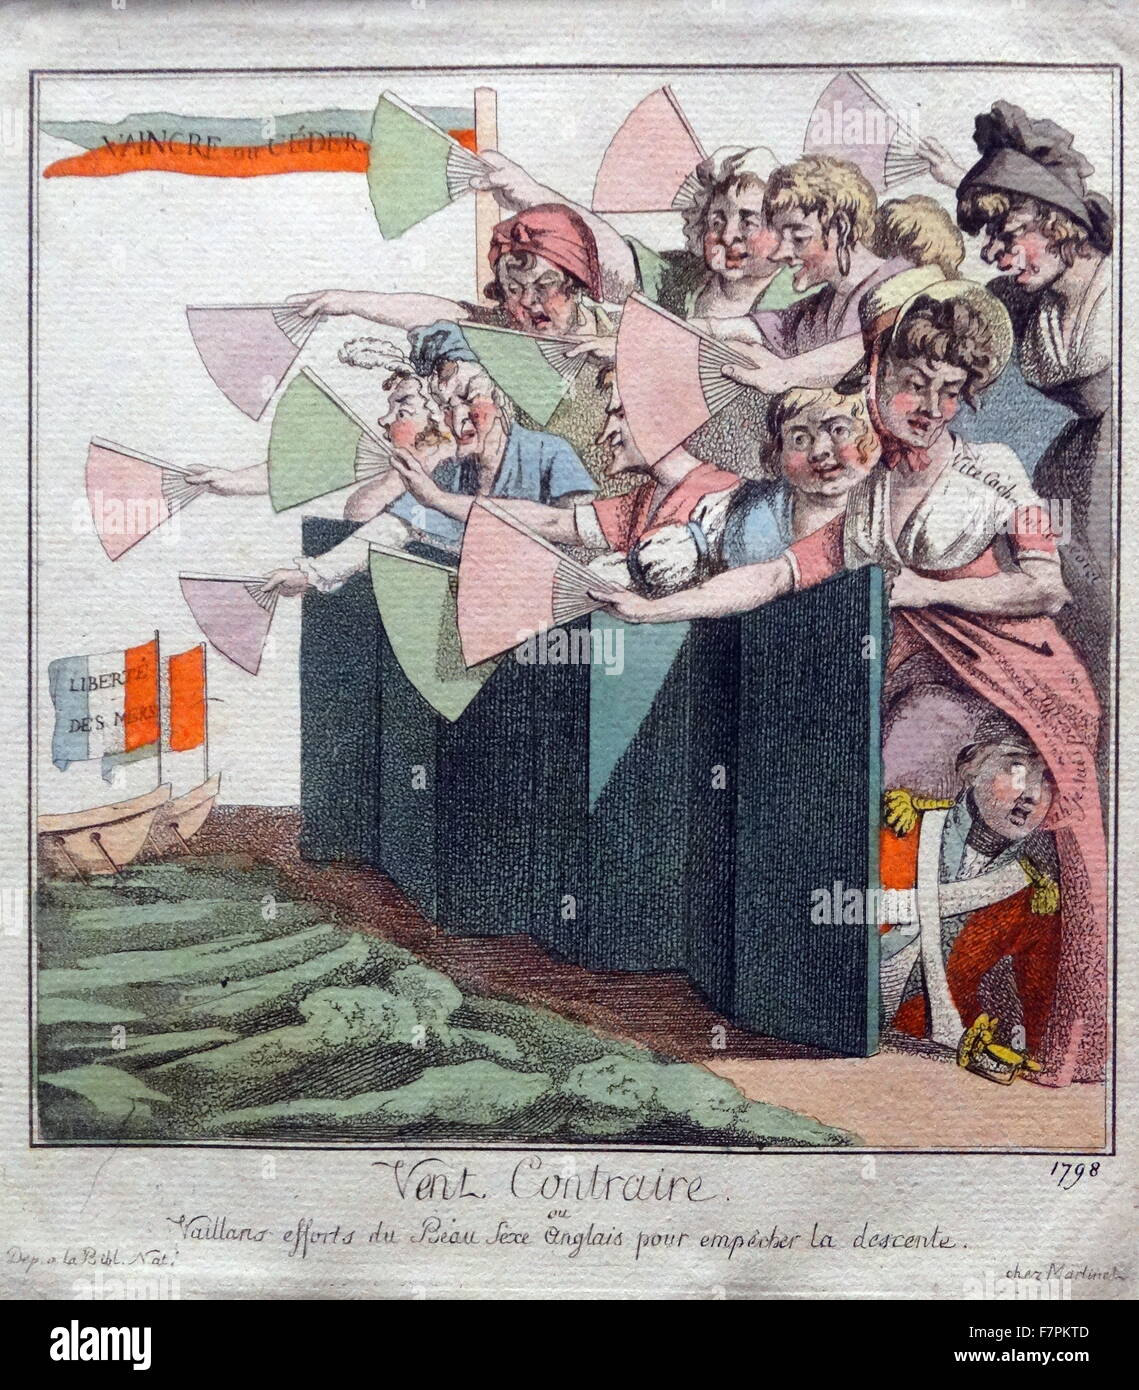 Handkolorierten Radierung mit dem Titel "Vent Contraire" herausgegeben von Aaron Martinet. Der Druck zeigt eine Gruppe von Superleistung hinter einem Paravent winkt ihren Fans in einem Versuch, die Landung der französischen Flotte zu verhindern. Datiert 1803 Stockfoto